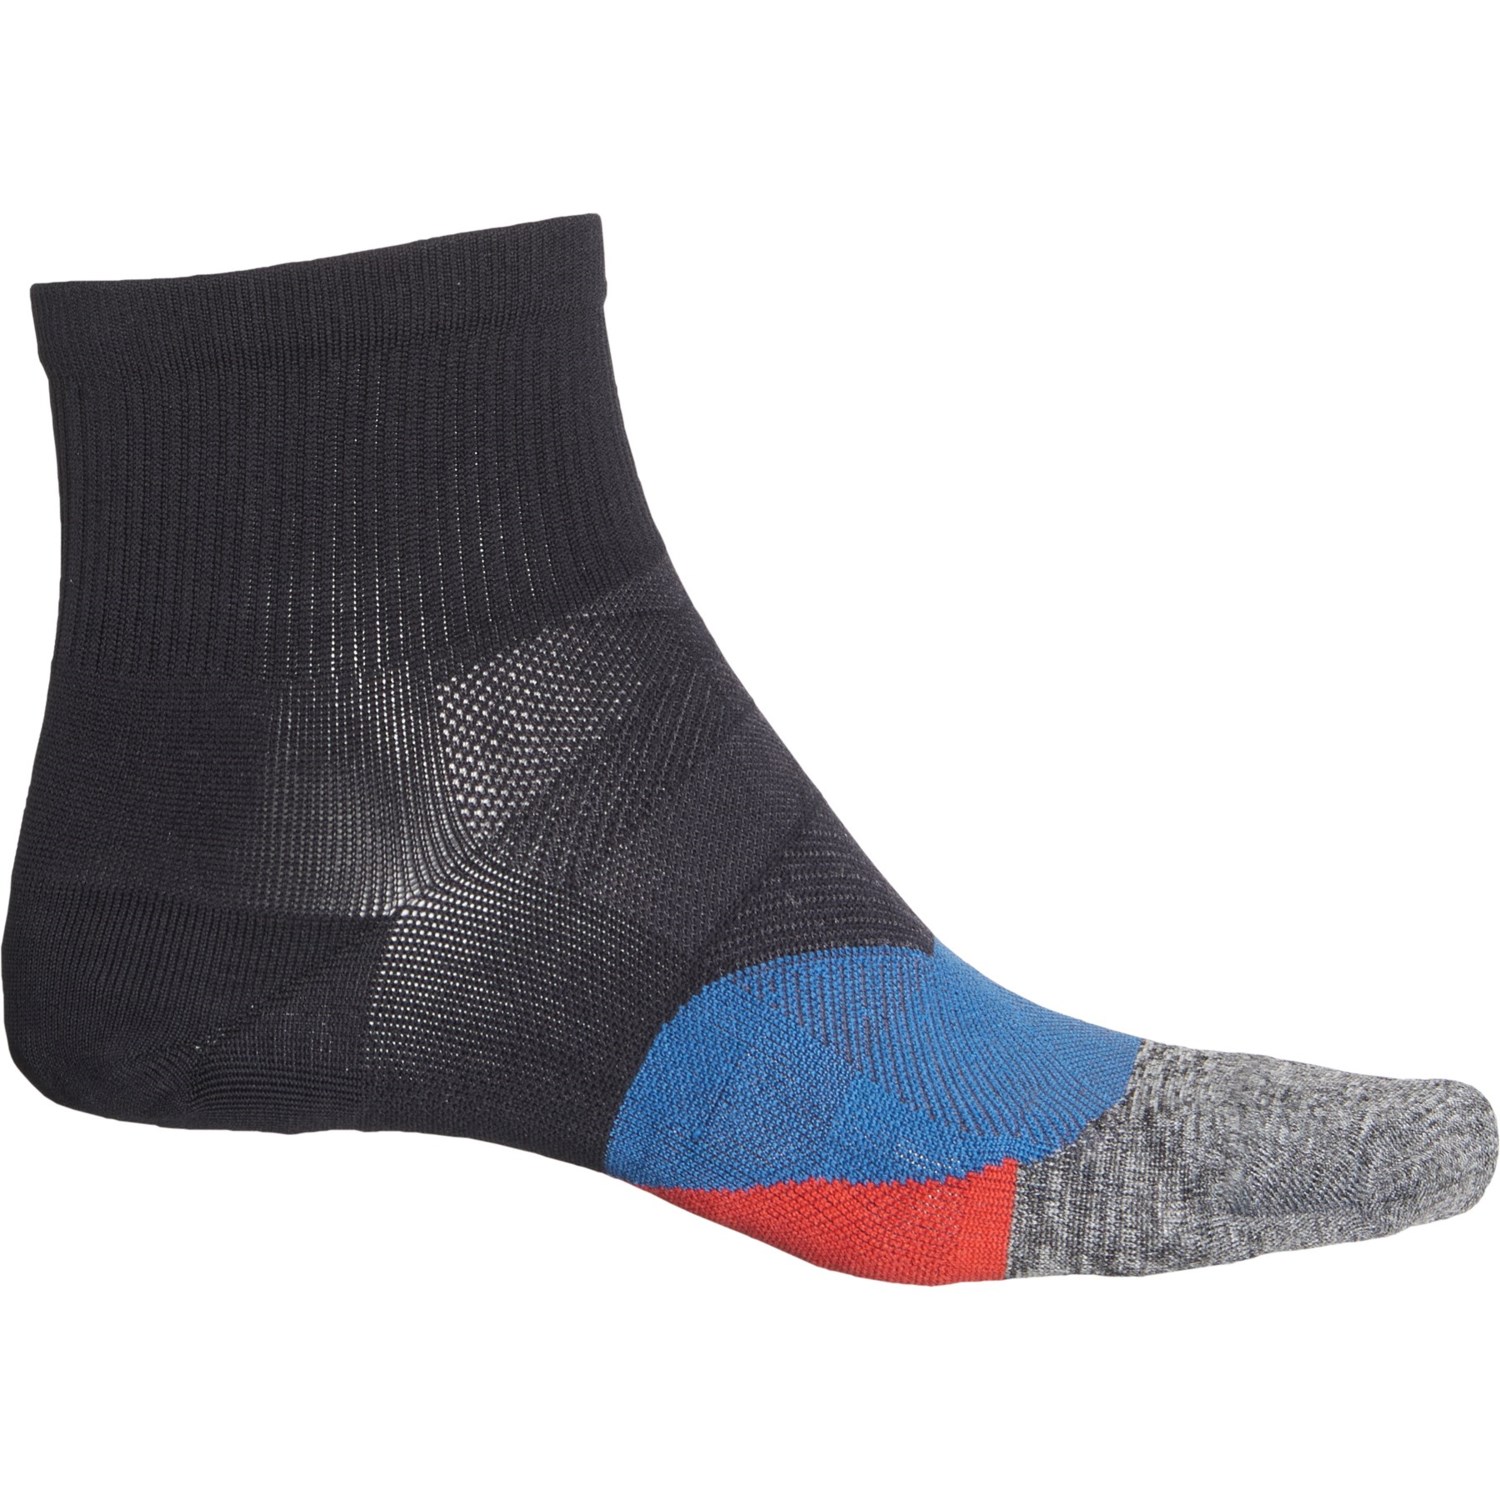 Feetures Elite Ultralight No-Show Tab Socks (For Men)